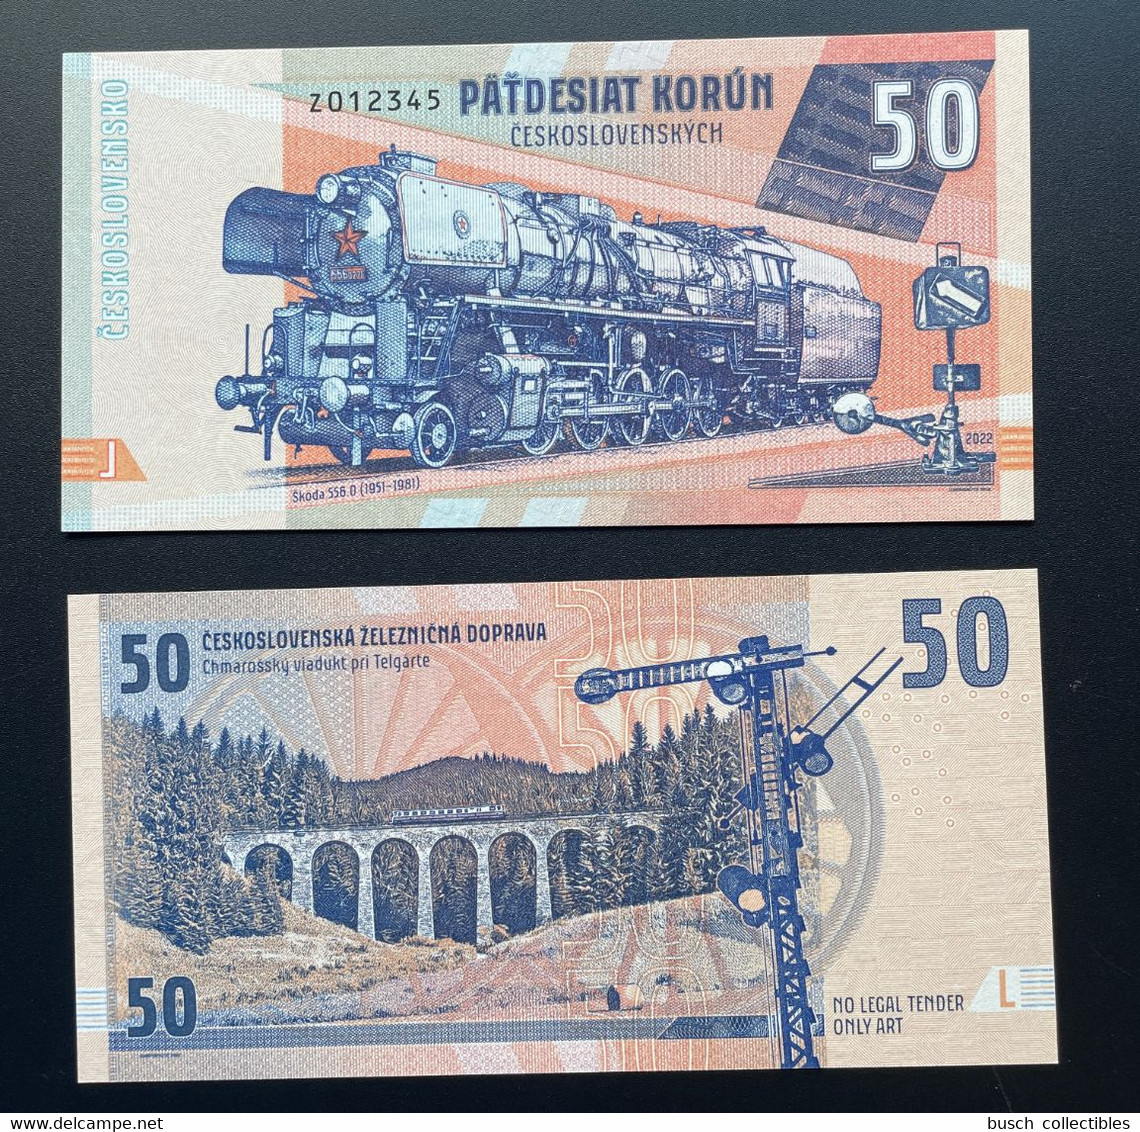 2021 Matej Gabris 50 Korun Czechoslovakia Skoda 556 Train Railways Eisenbahn Locomotive 012345 UNC SPECIMEN ESSAY - Ficción & Especímenes